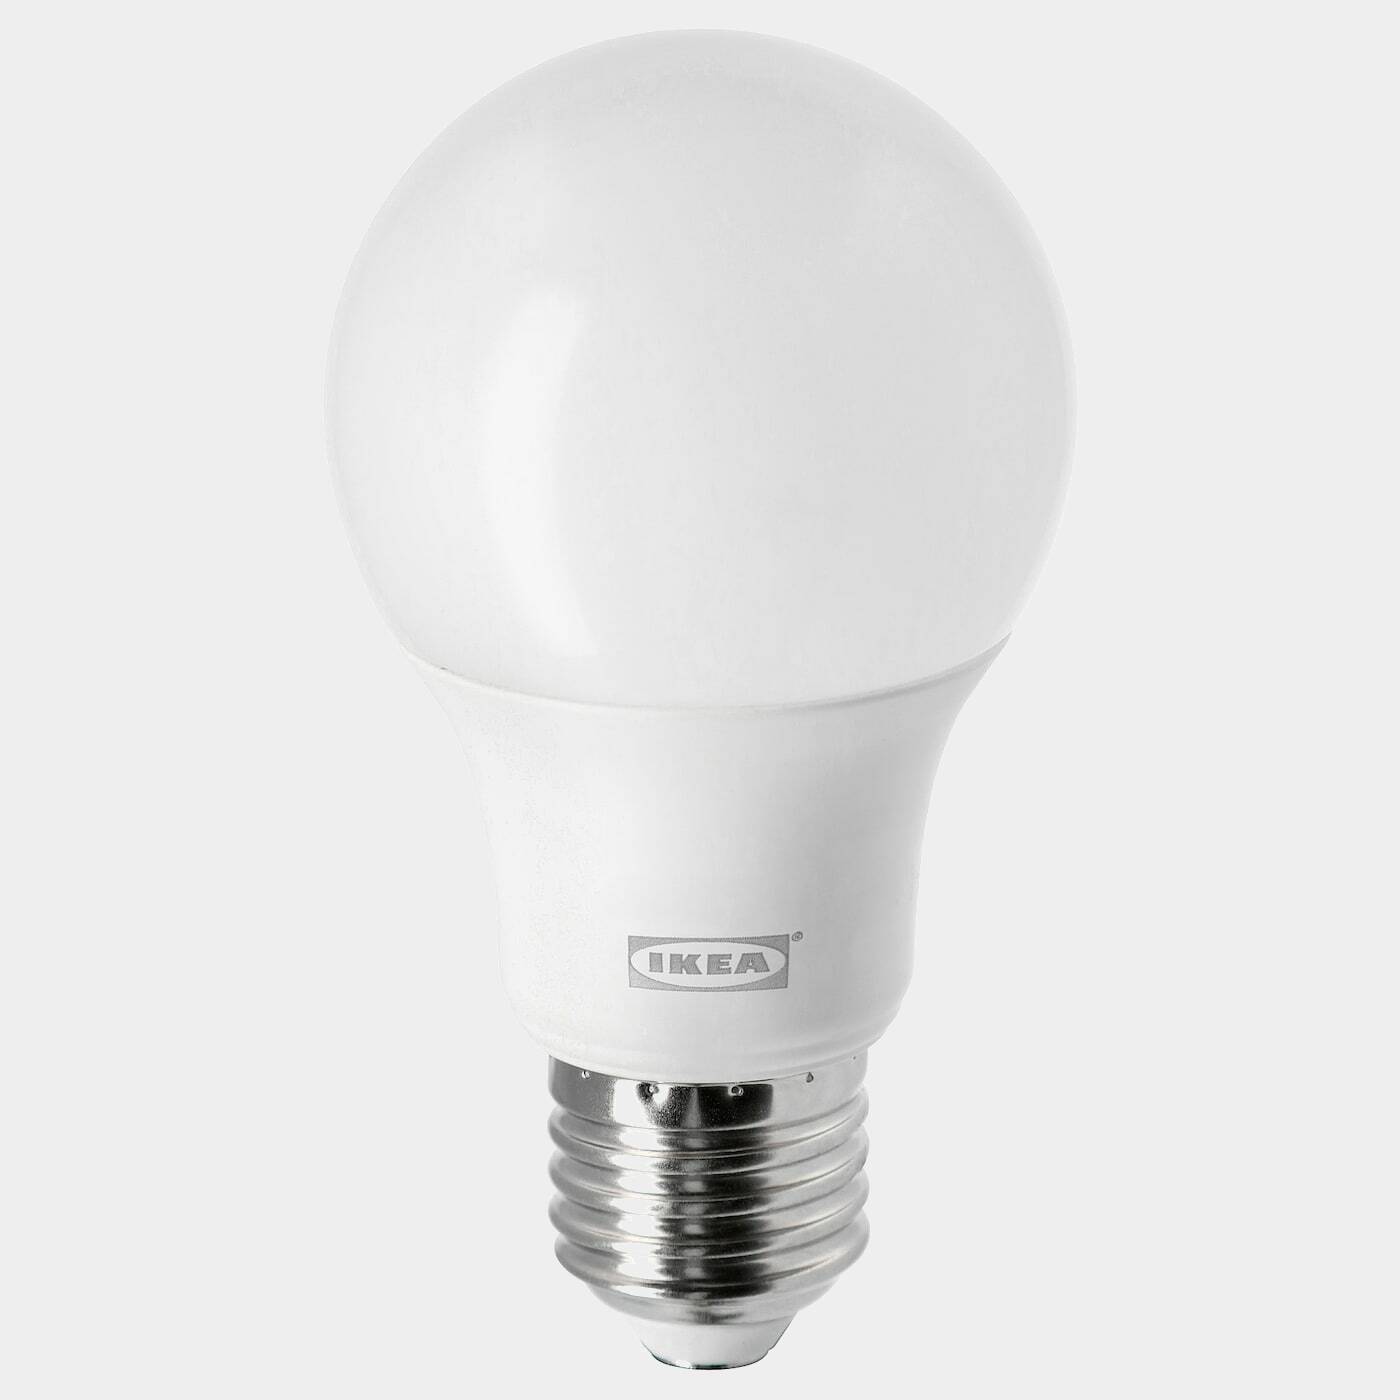 LEDARE LED-Leuchtmittel E27 806 lm  -  - Beleuchtung Ideen für dein Zuhause von Home Trends. Beleuchtung Trends von Social Media Influencer für dein Skandi Zuhause.